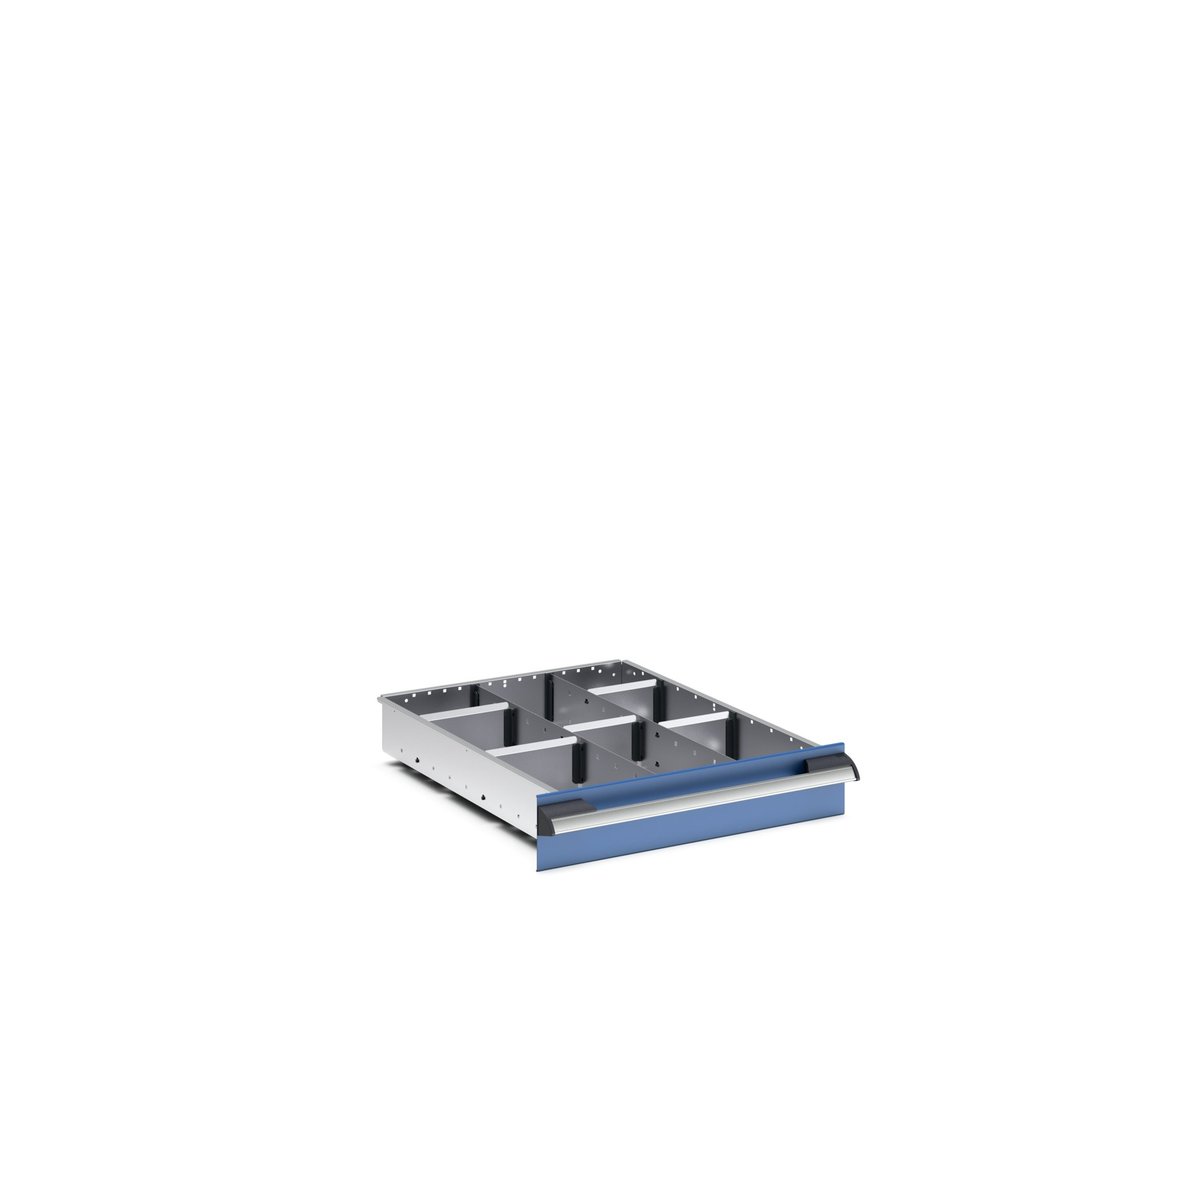 43020631.51 - cubio adjustable divider kit